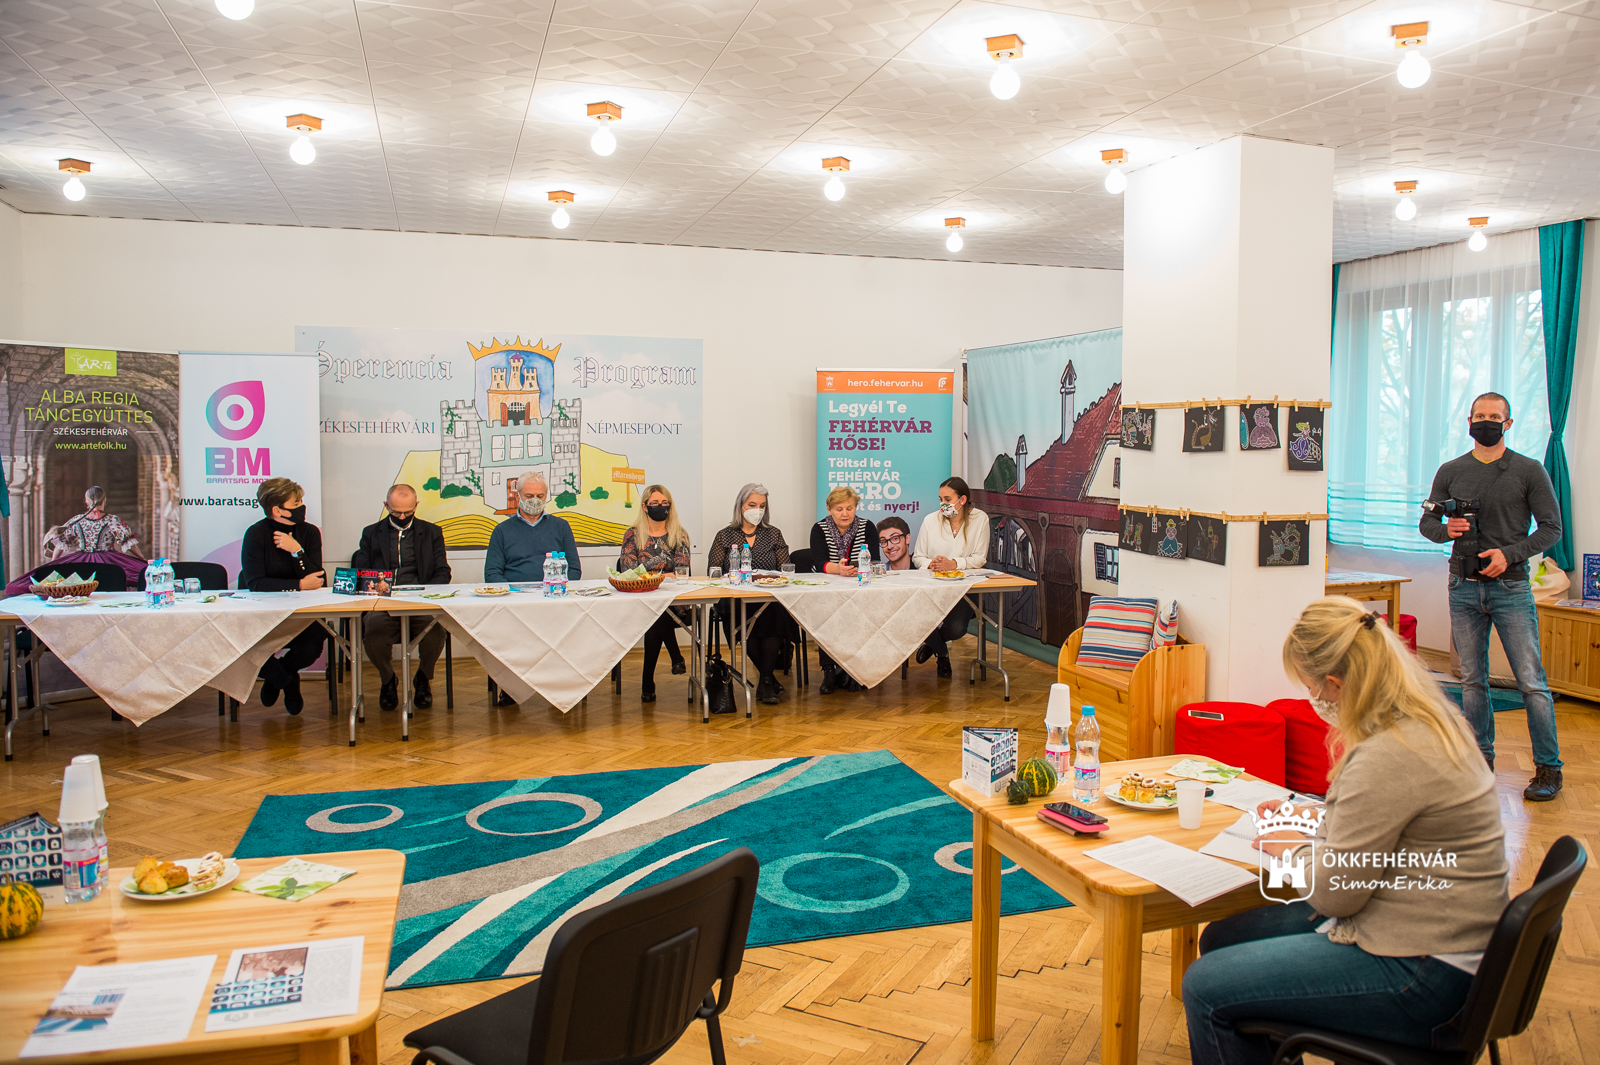 Szolgálat és szolgáltatás - novemberi programkínálat a fehérvári művelődési házakban